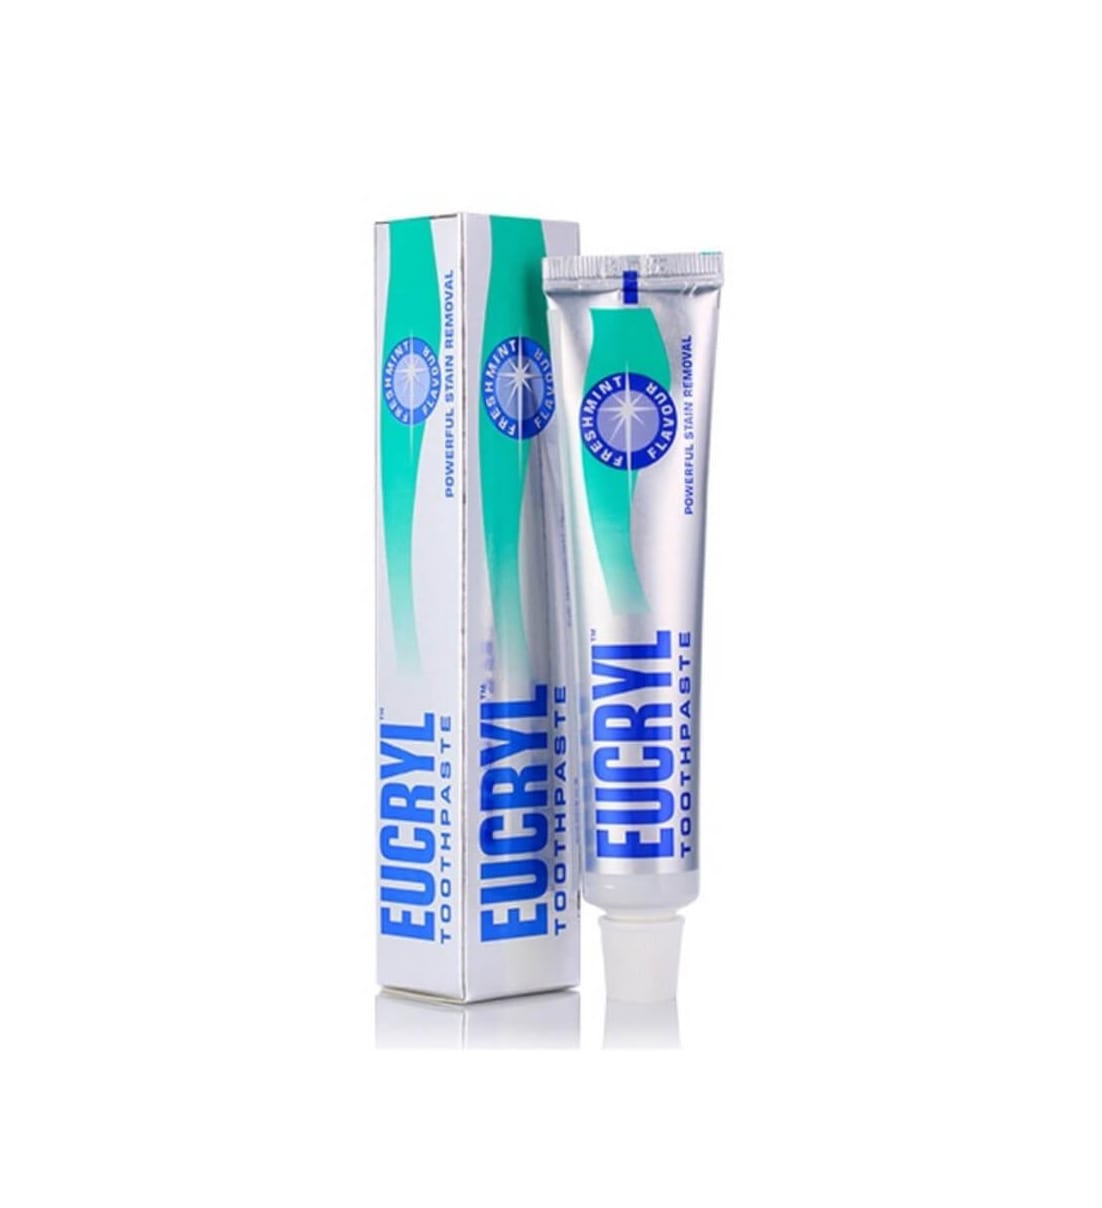 review kem tẩy trắng răng eucryl có tốt không, review kem tẩy trắng răng eucryl, kem tẩy trắng răng eucryl, kem tẩy trắng răng eucryl review, kem tẩy trắng răng eucryl, kem tẩy trắng răng eucryl có tốt không, kem tẩy trắng răng eucryl mua ở đâu, kem đánh răng tẩy trắng răng eucryl, cách dùng kem tẩy trắng răng eucryl, cách sử dụng kem tẩy trắng răng eucryl